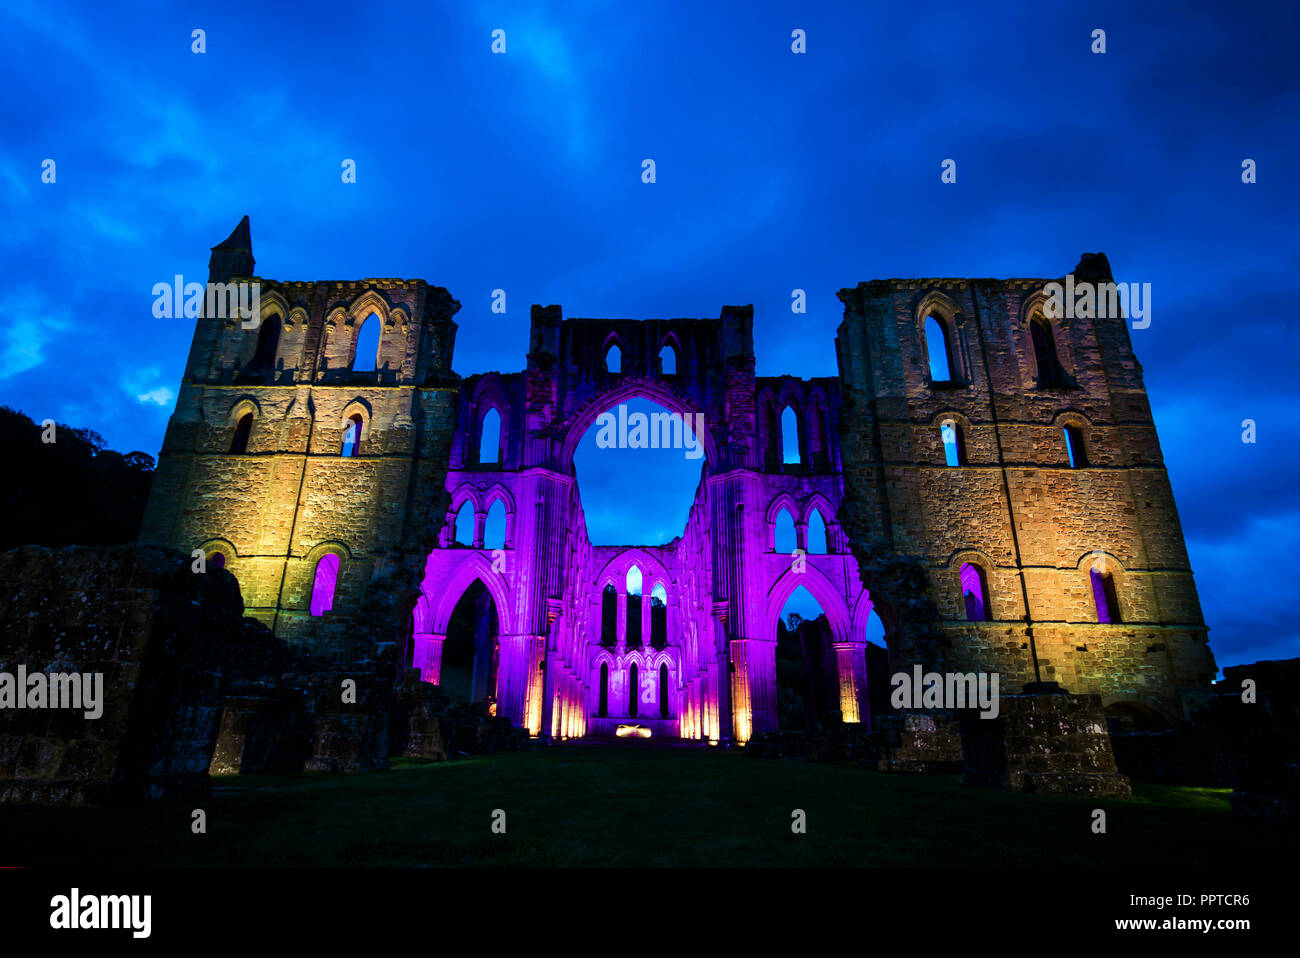 Rievaulx Abbey ist in farbiges Licht vor der leuchtenden Rievaulx, drei Nacht Licht getaucht und Installation am 11. sound Abtei Ruinen in North Yorkshire. Stockfoto